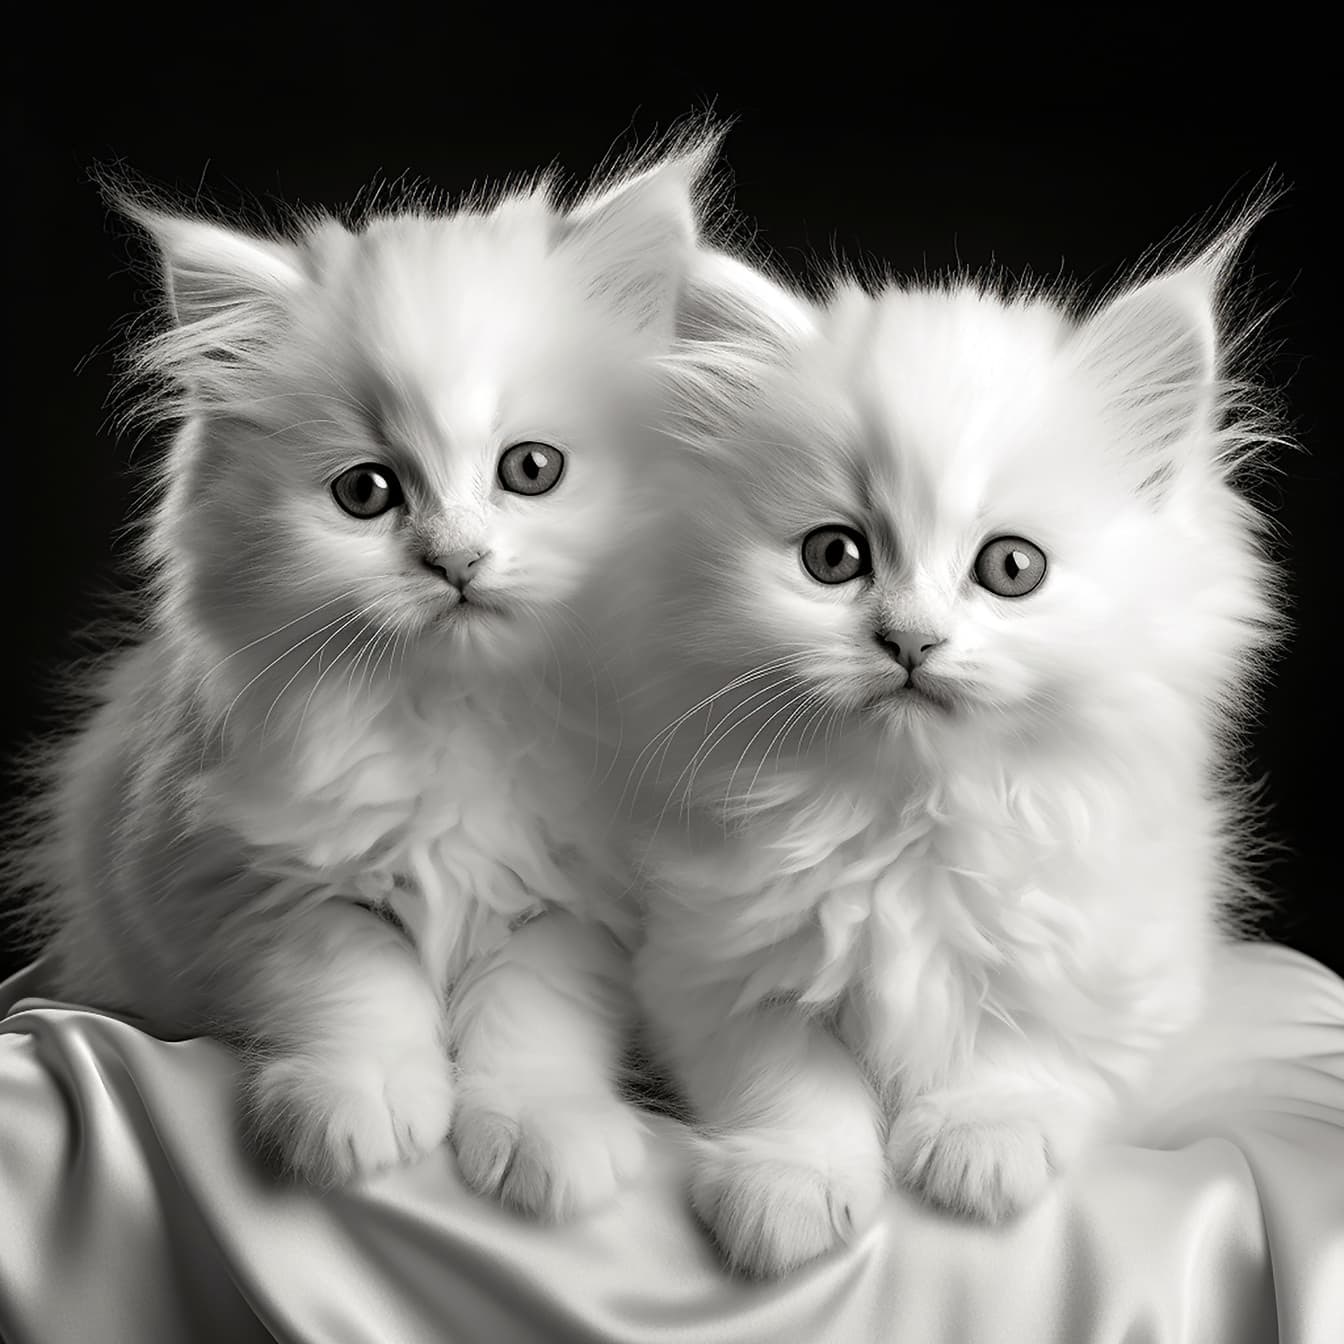 Monochromatická ilustrácia rozkošných bielych mačiatok zblízka